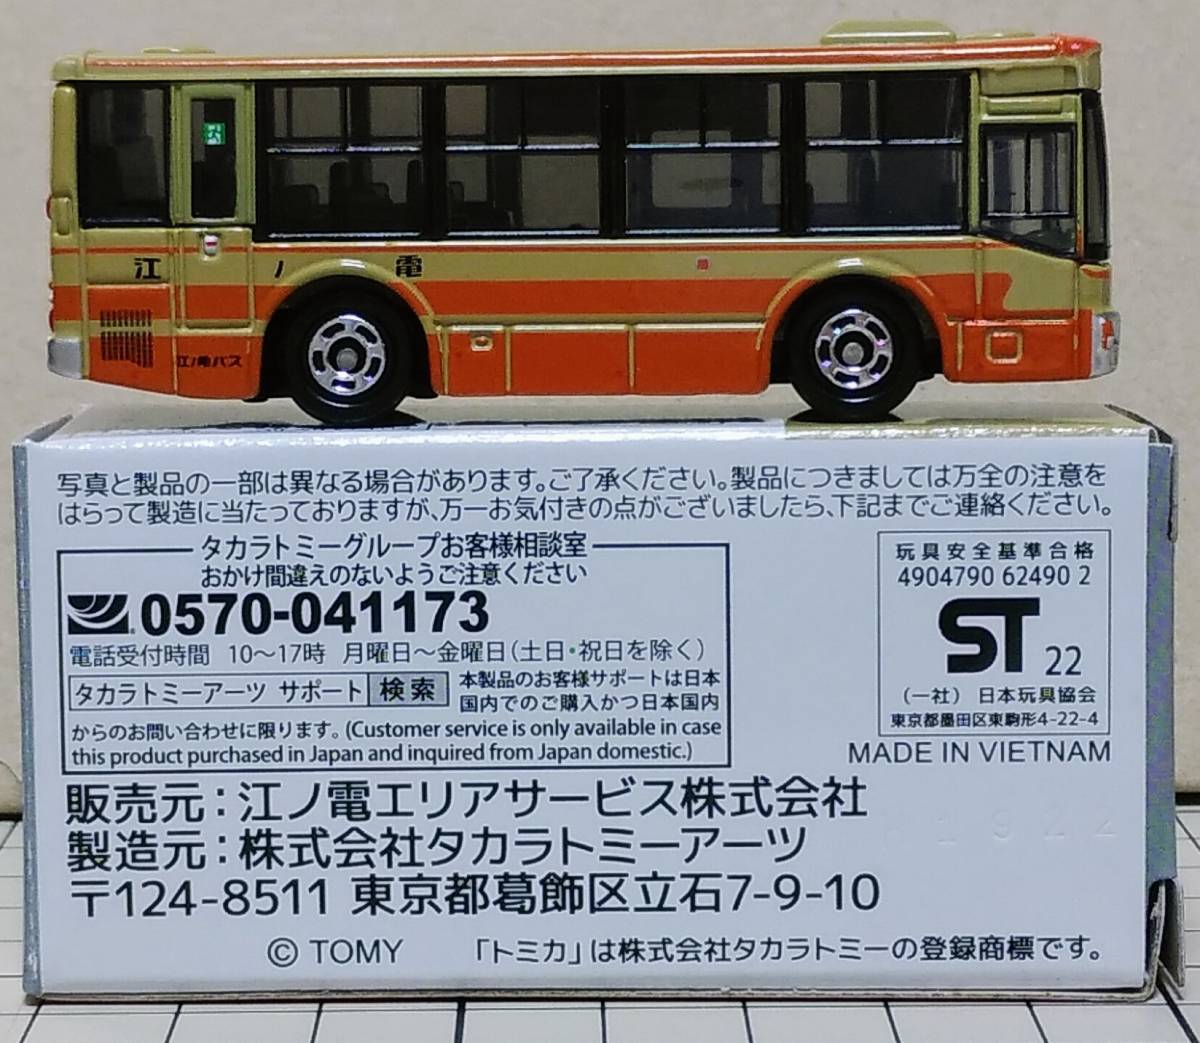 江ノ電バス 路線バス 三菱ふそうエアロスター オリジナルトミカ(新品 